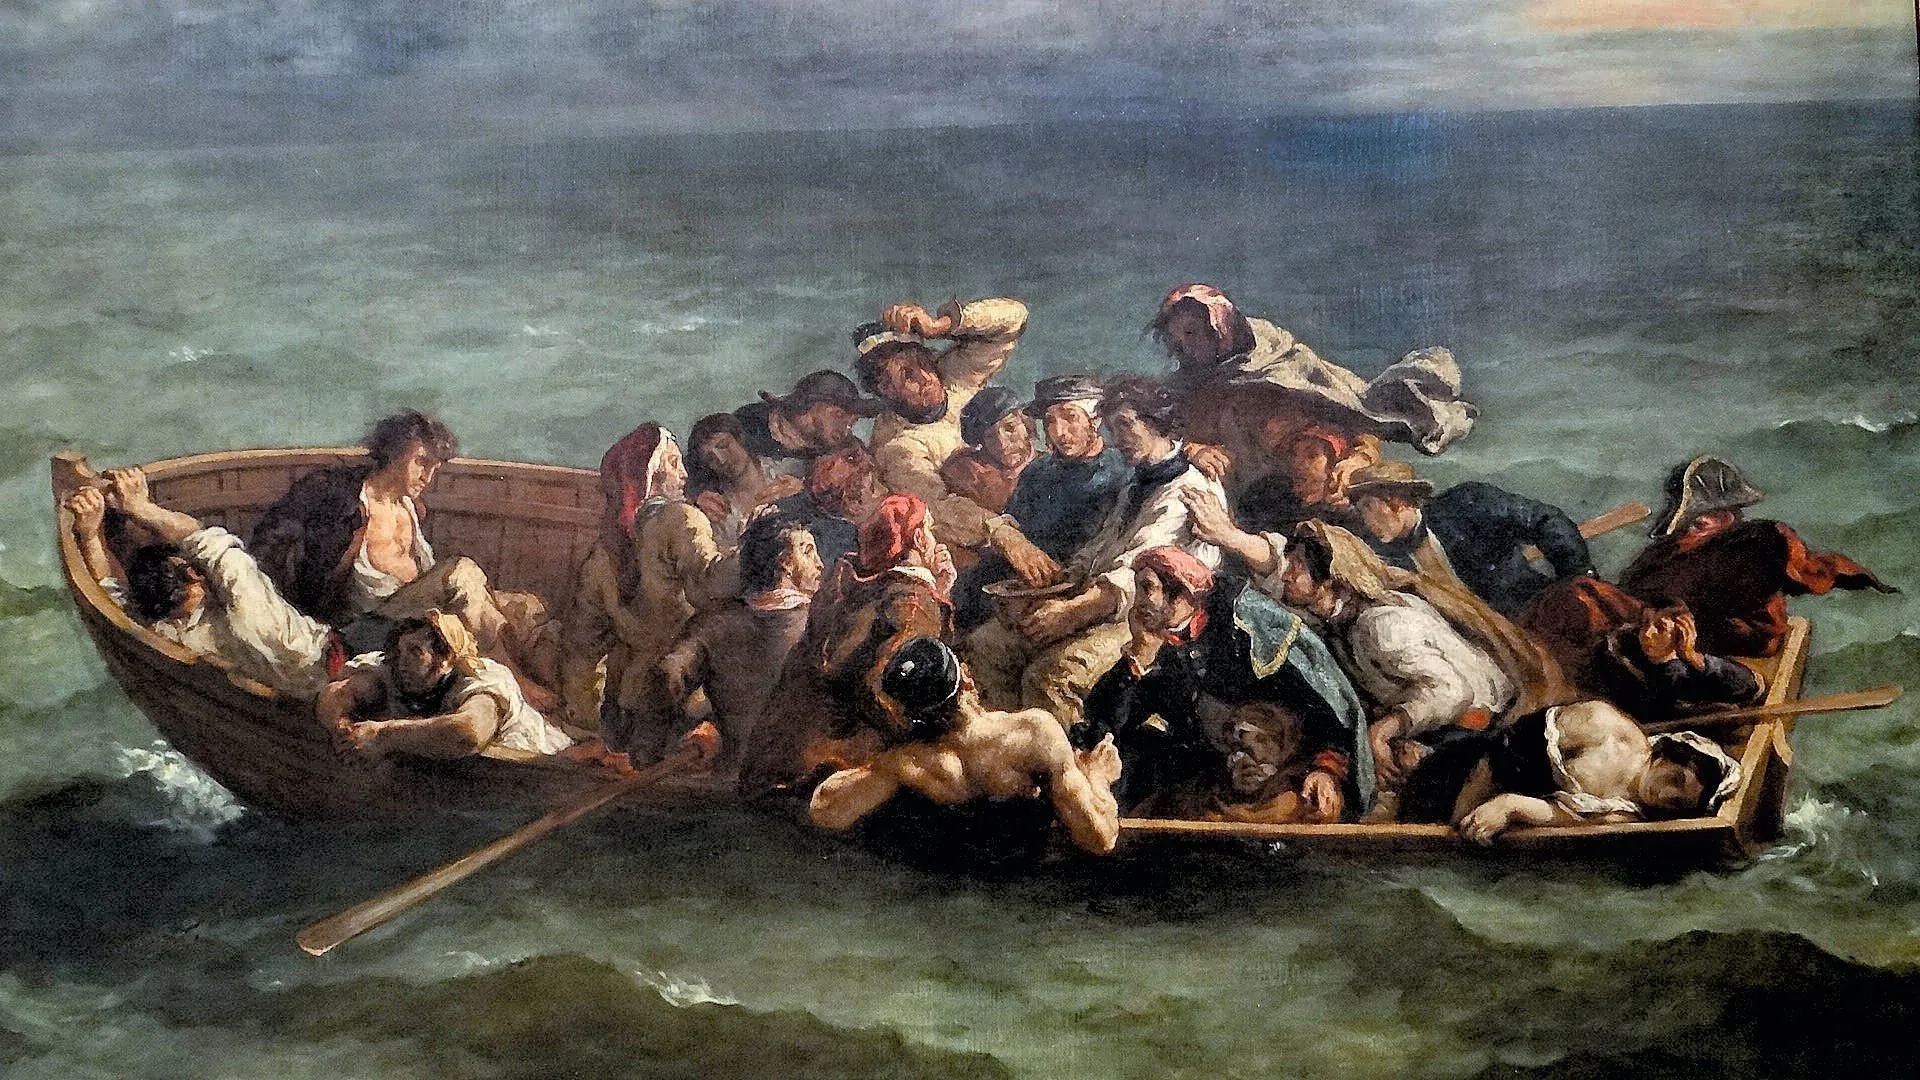 Eugène Delacroix, Le Naufrage de Don Juan, 1840, huile sur toile, musée du Louvre, Paris.